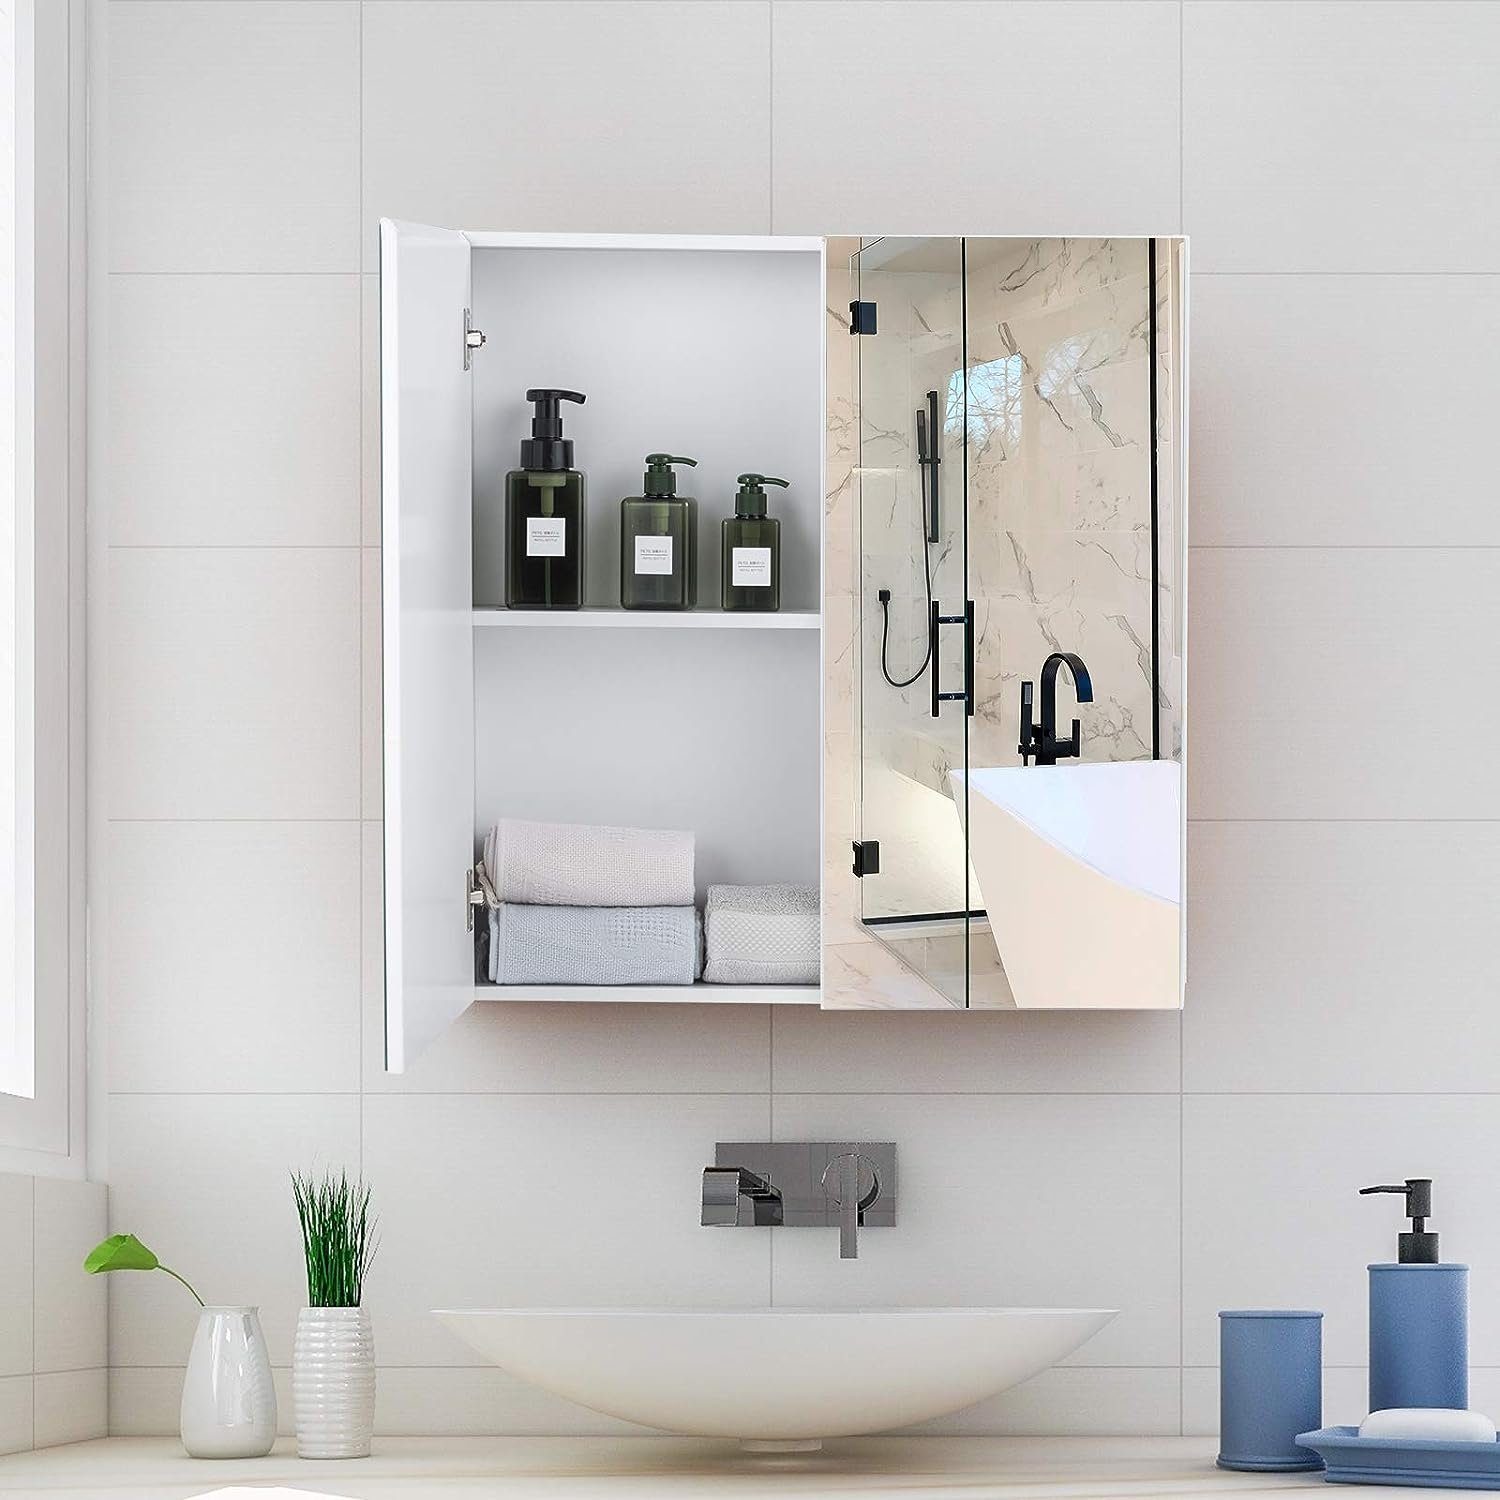 KOMFOTTEU Badezimmerspiegelschrank Spiegelschrank Türen, cm x 11,3 65 x mit 62 2